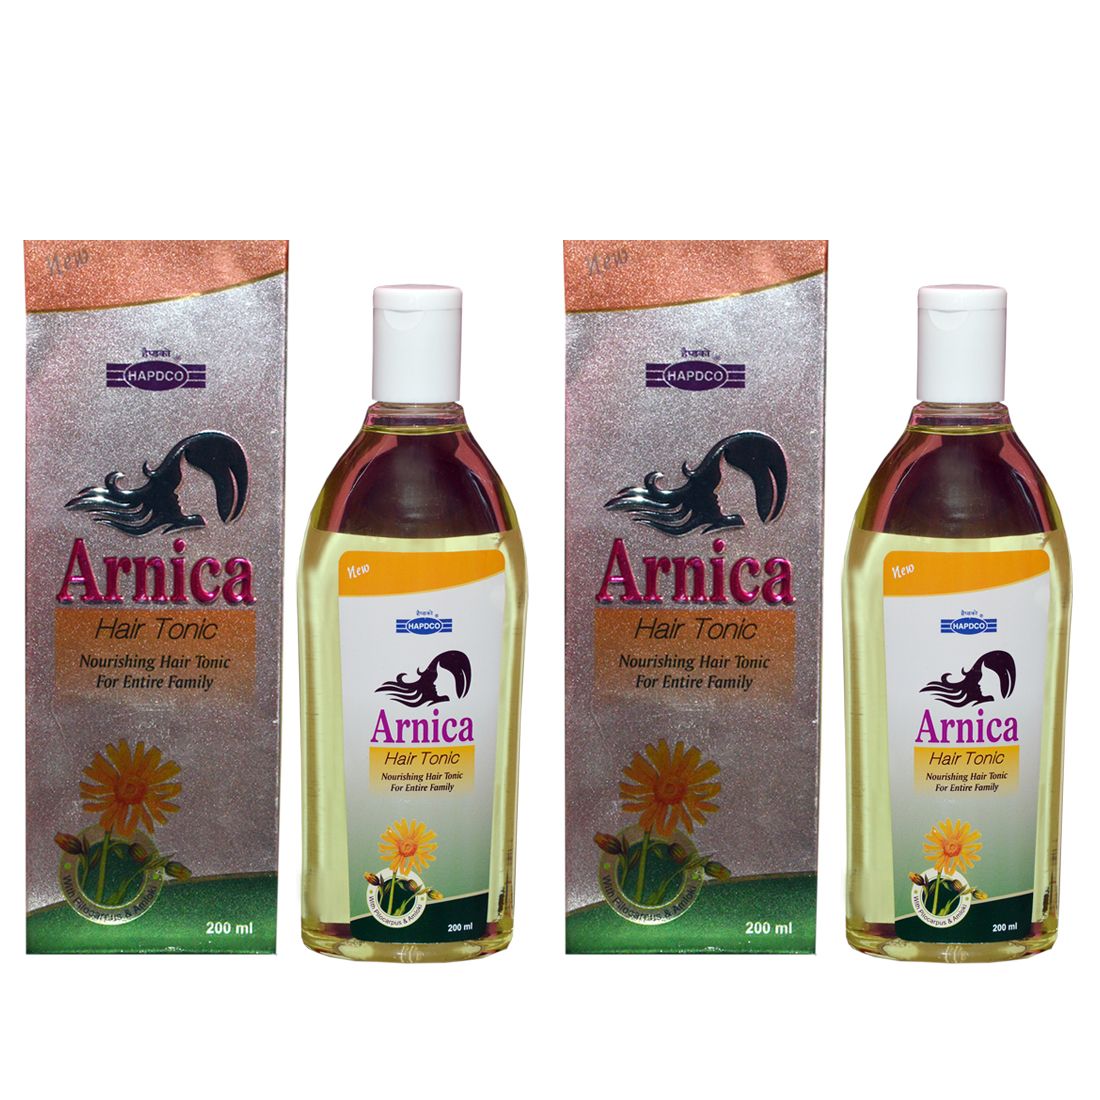 Hapdco Arnica Hair Tonic (200ml) PACK OF 2